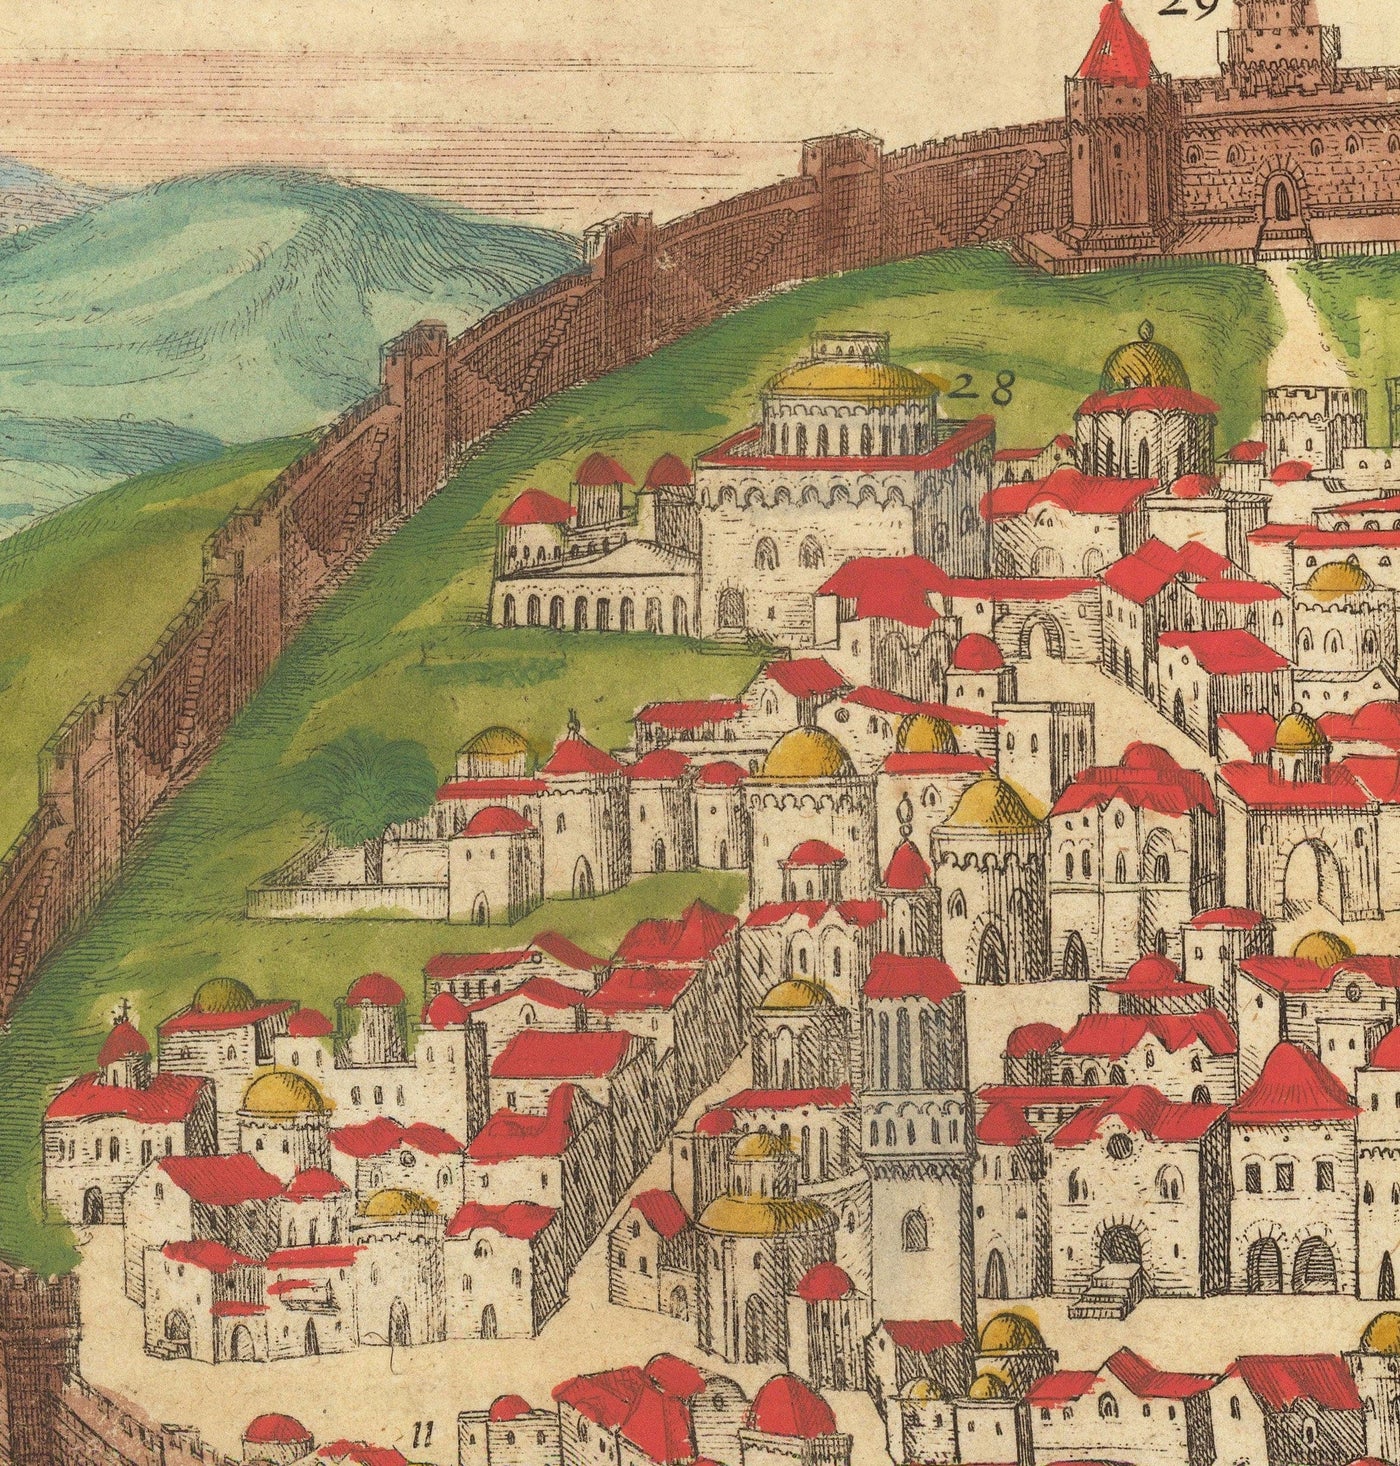 Viejo mapa de Jerusalén, 1582 de Georg Braun - Ciudad vieja de Judía y Islam, Monte del templo, Muros de la ciudad, Torre de David, Puerta de Jaffa